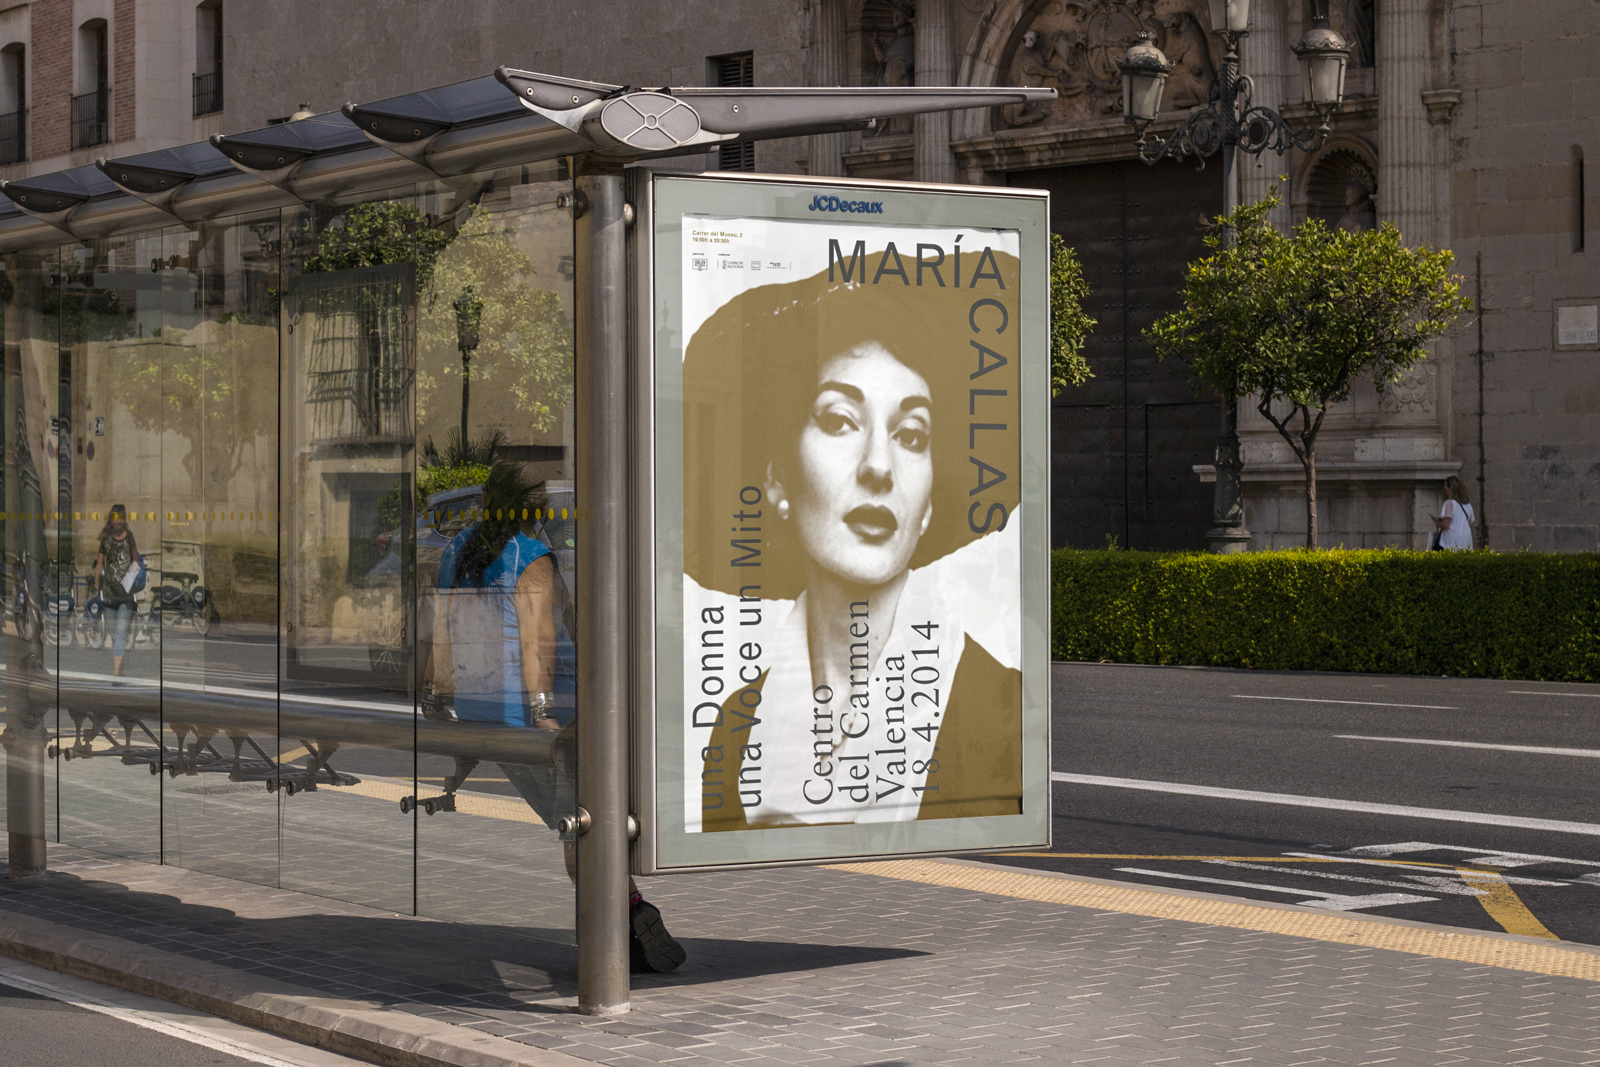 Maria Callas - Diseño gráfico y identidad visual para la exposición monográfica sobre Maria Callas en el Centro del Carmen de Valencia